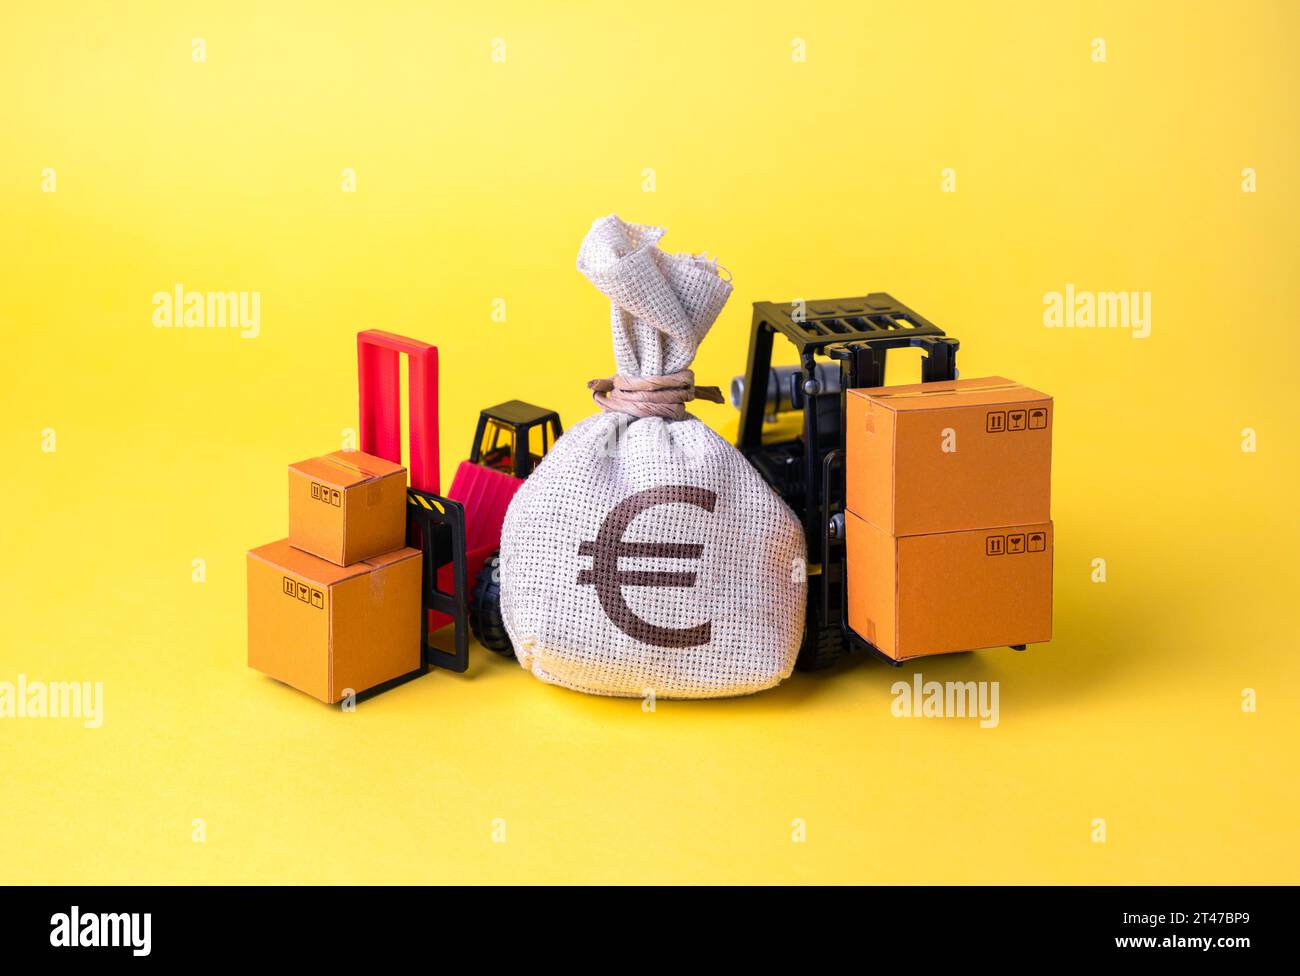 Euro Money bag e attrezzature di carico da magazzino. Soluzioni per il trasporto merci, la gestione logistica e il magazzinaggio. Tendenze economiche, polici commerciali Foto Stock